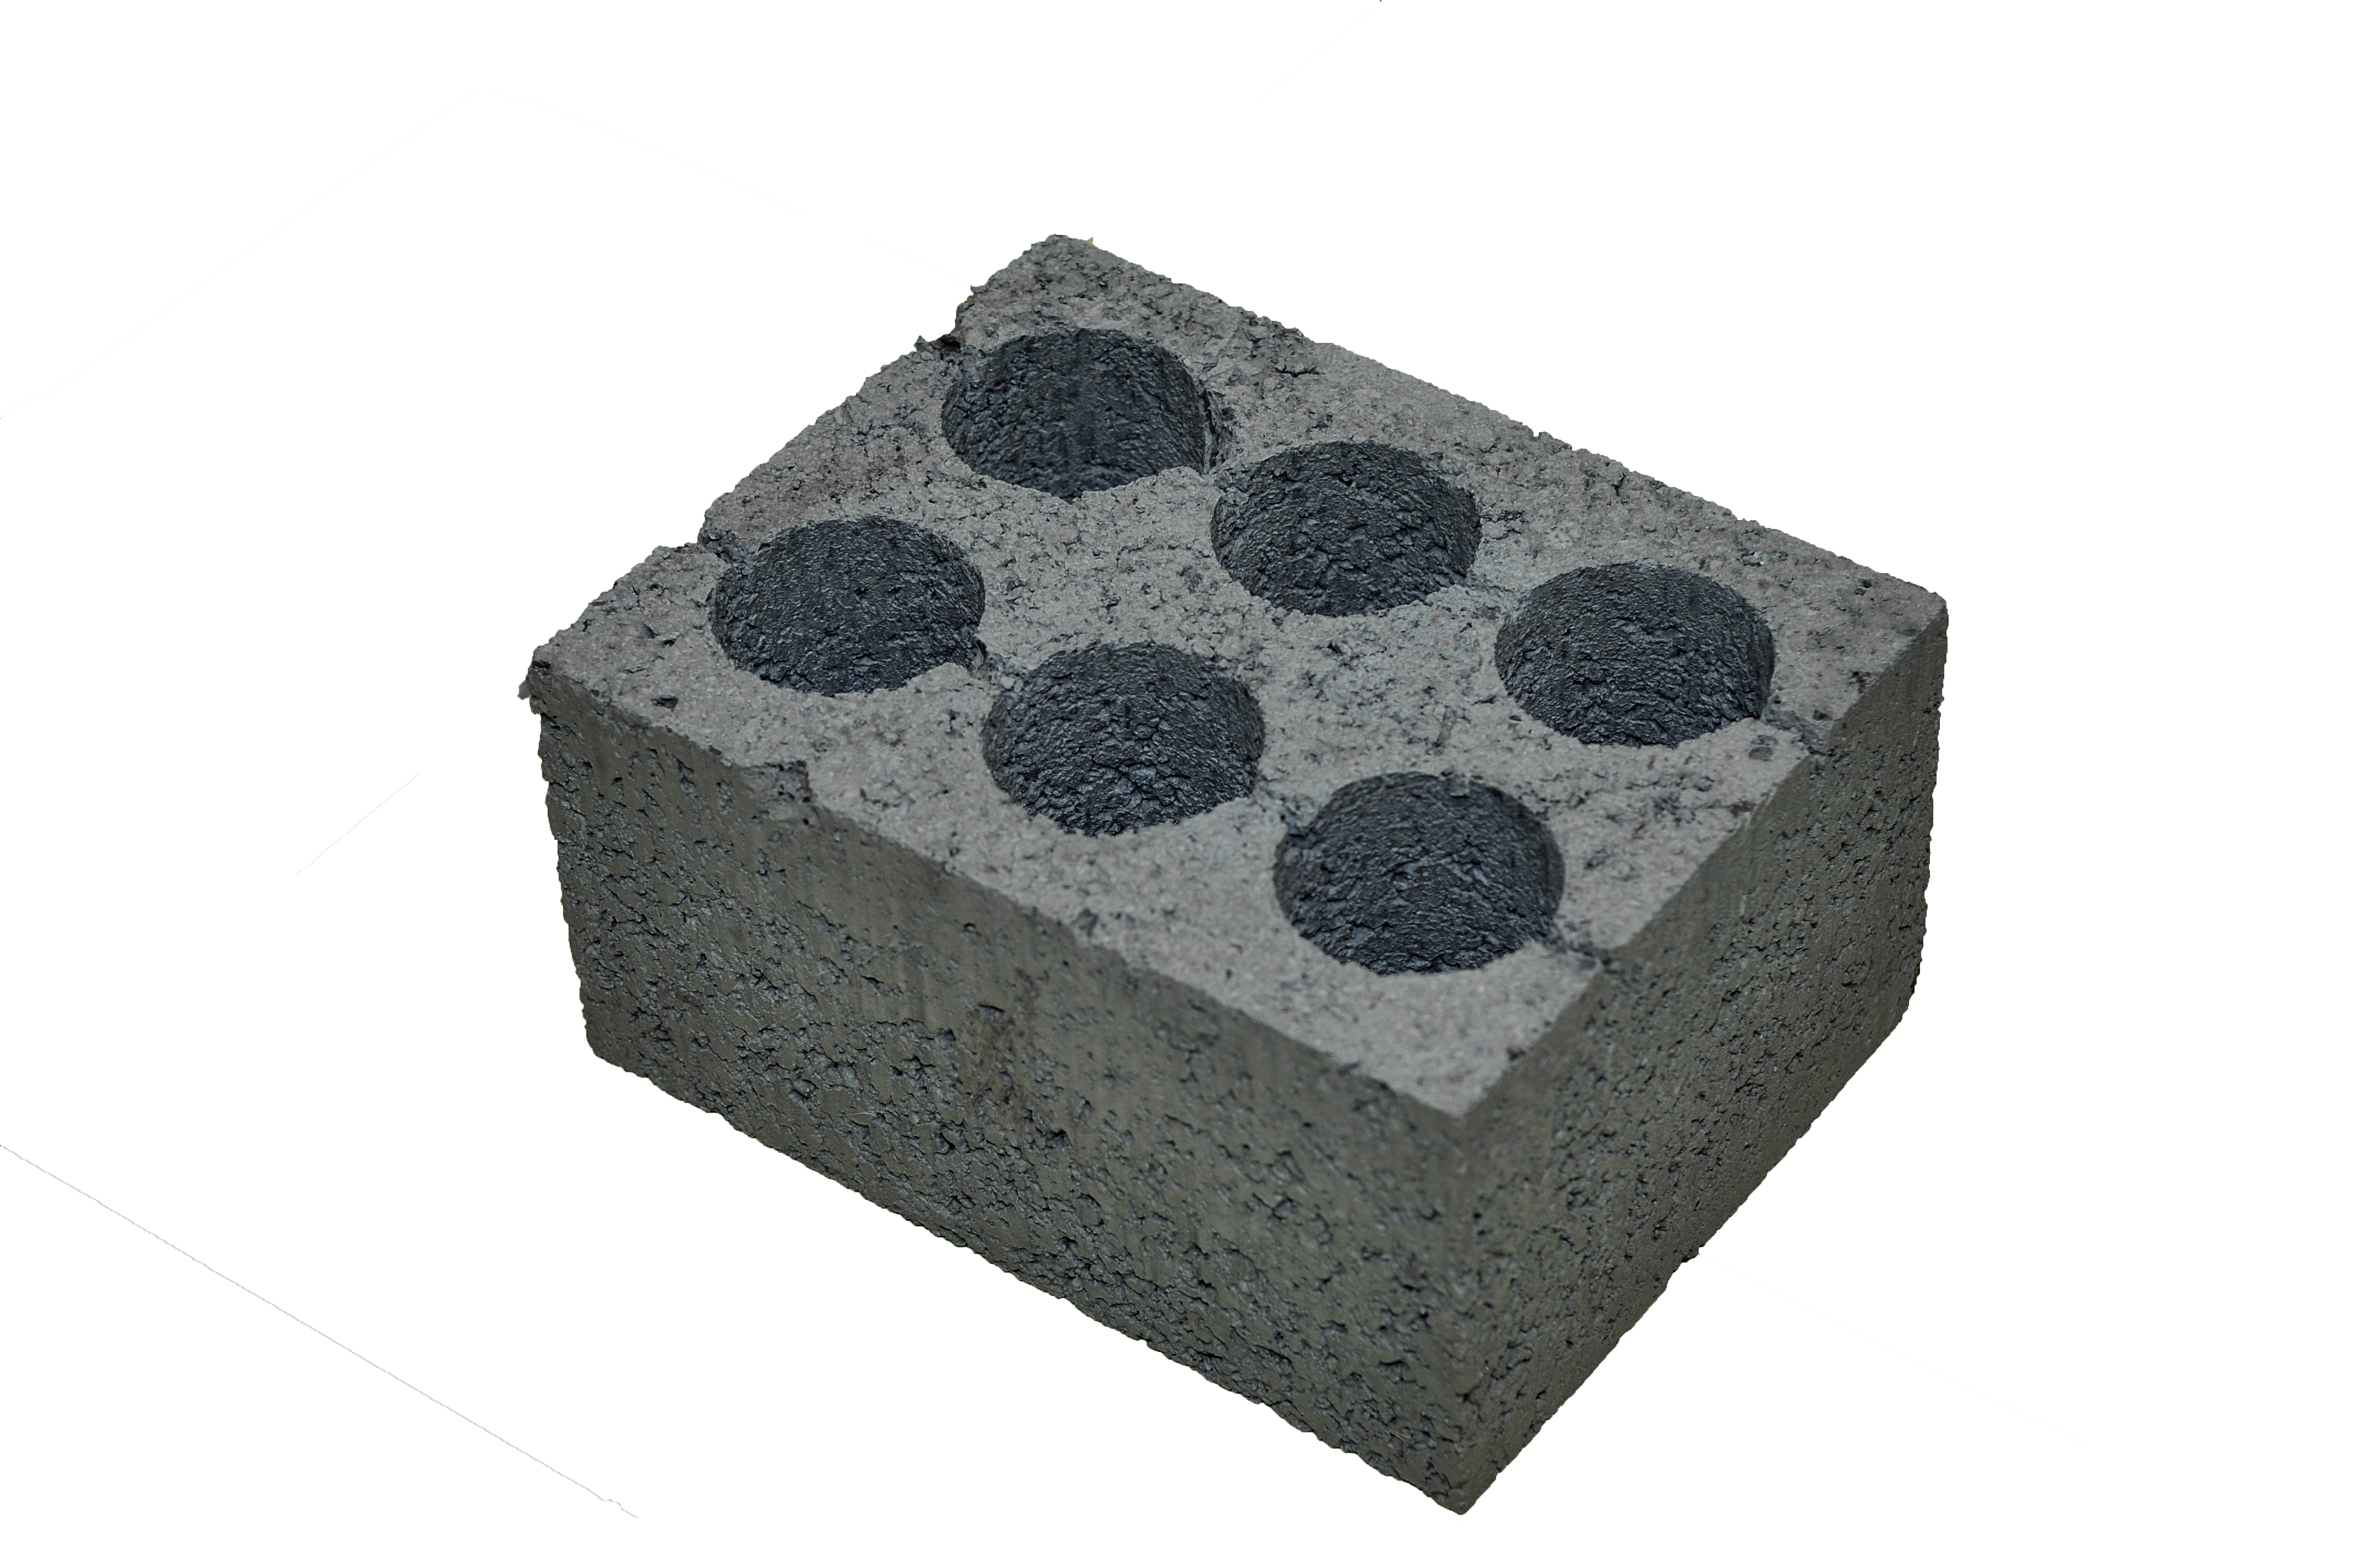 Купить керамзитоблок стеновой М50(390х300х188) в Тюмени недорого с завода ВЗКГ